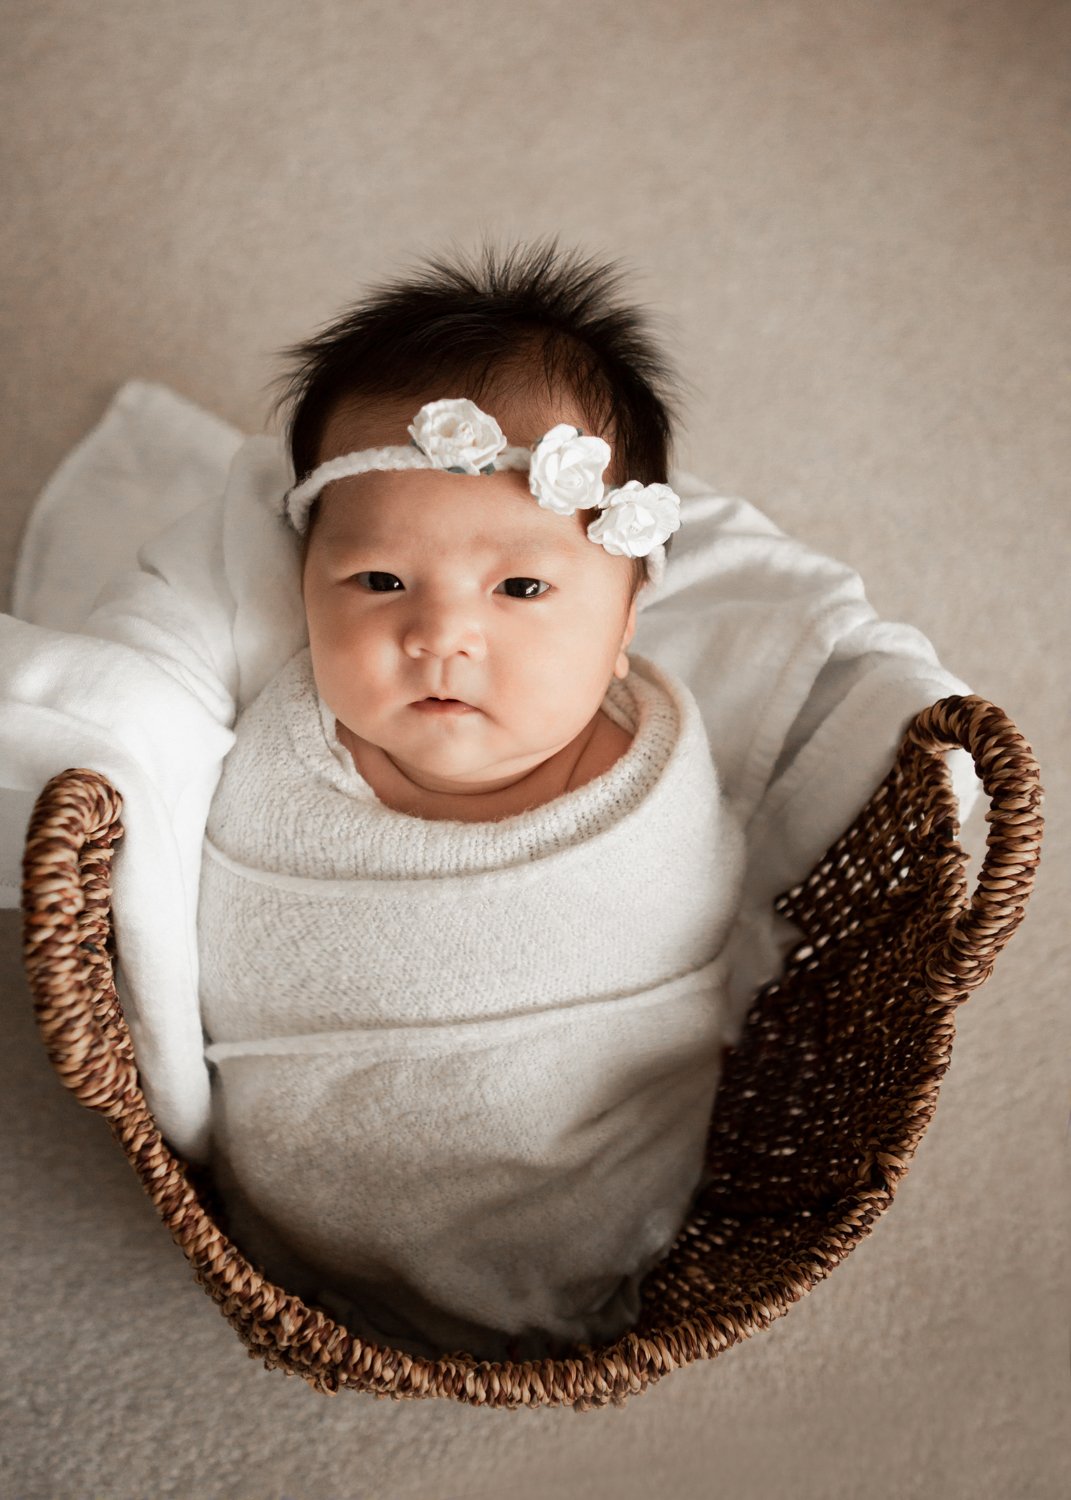 Newborn Baby Basket Photo Ideas